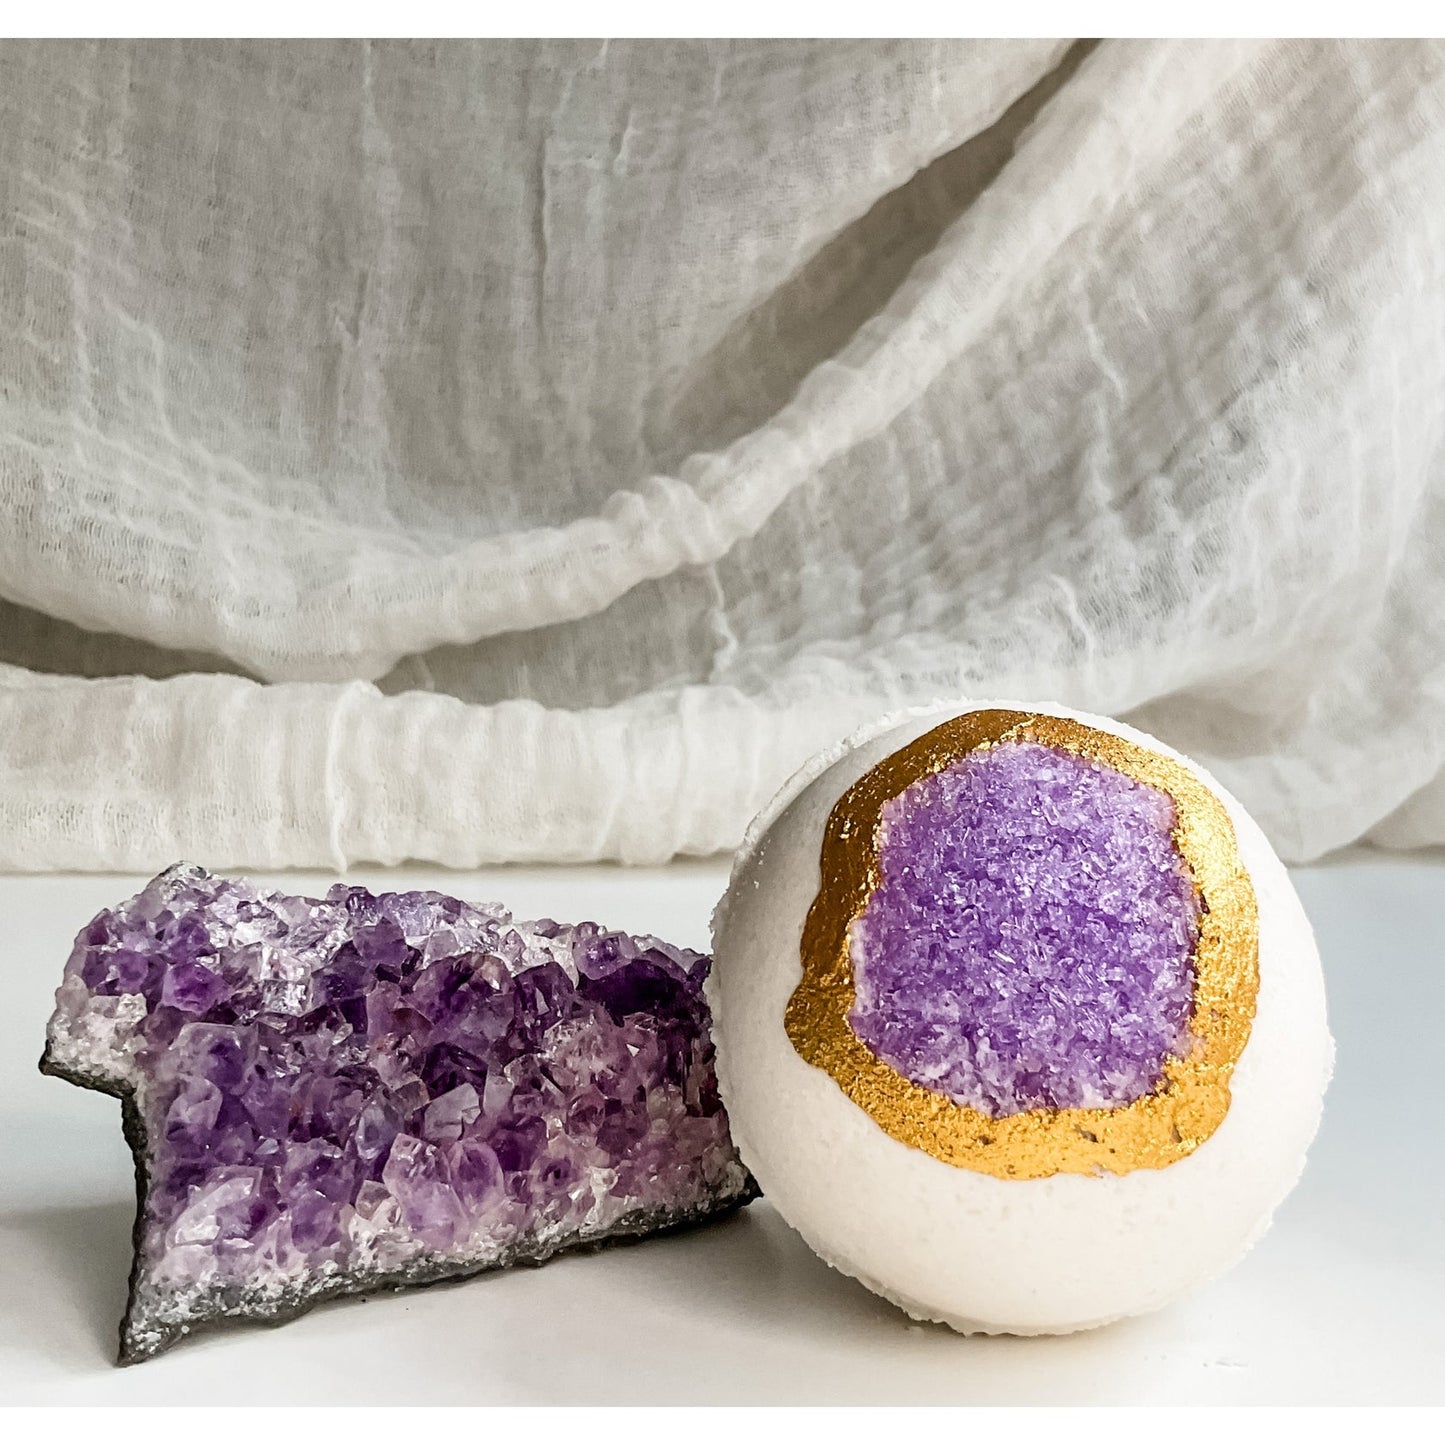 Amethyst Geode - Intuition Crystal Bath Bomb / 紫水晶浴球 - 提高睡眠质量/舒缓紧张情绪/提高记忆力